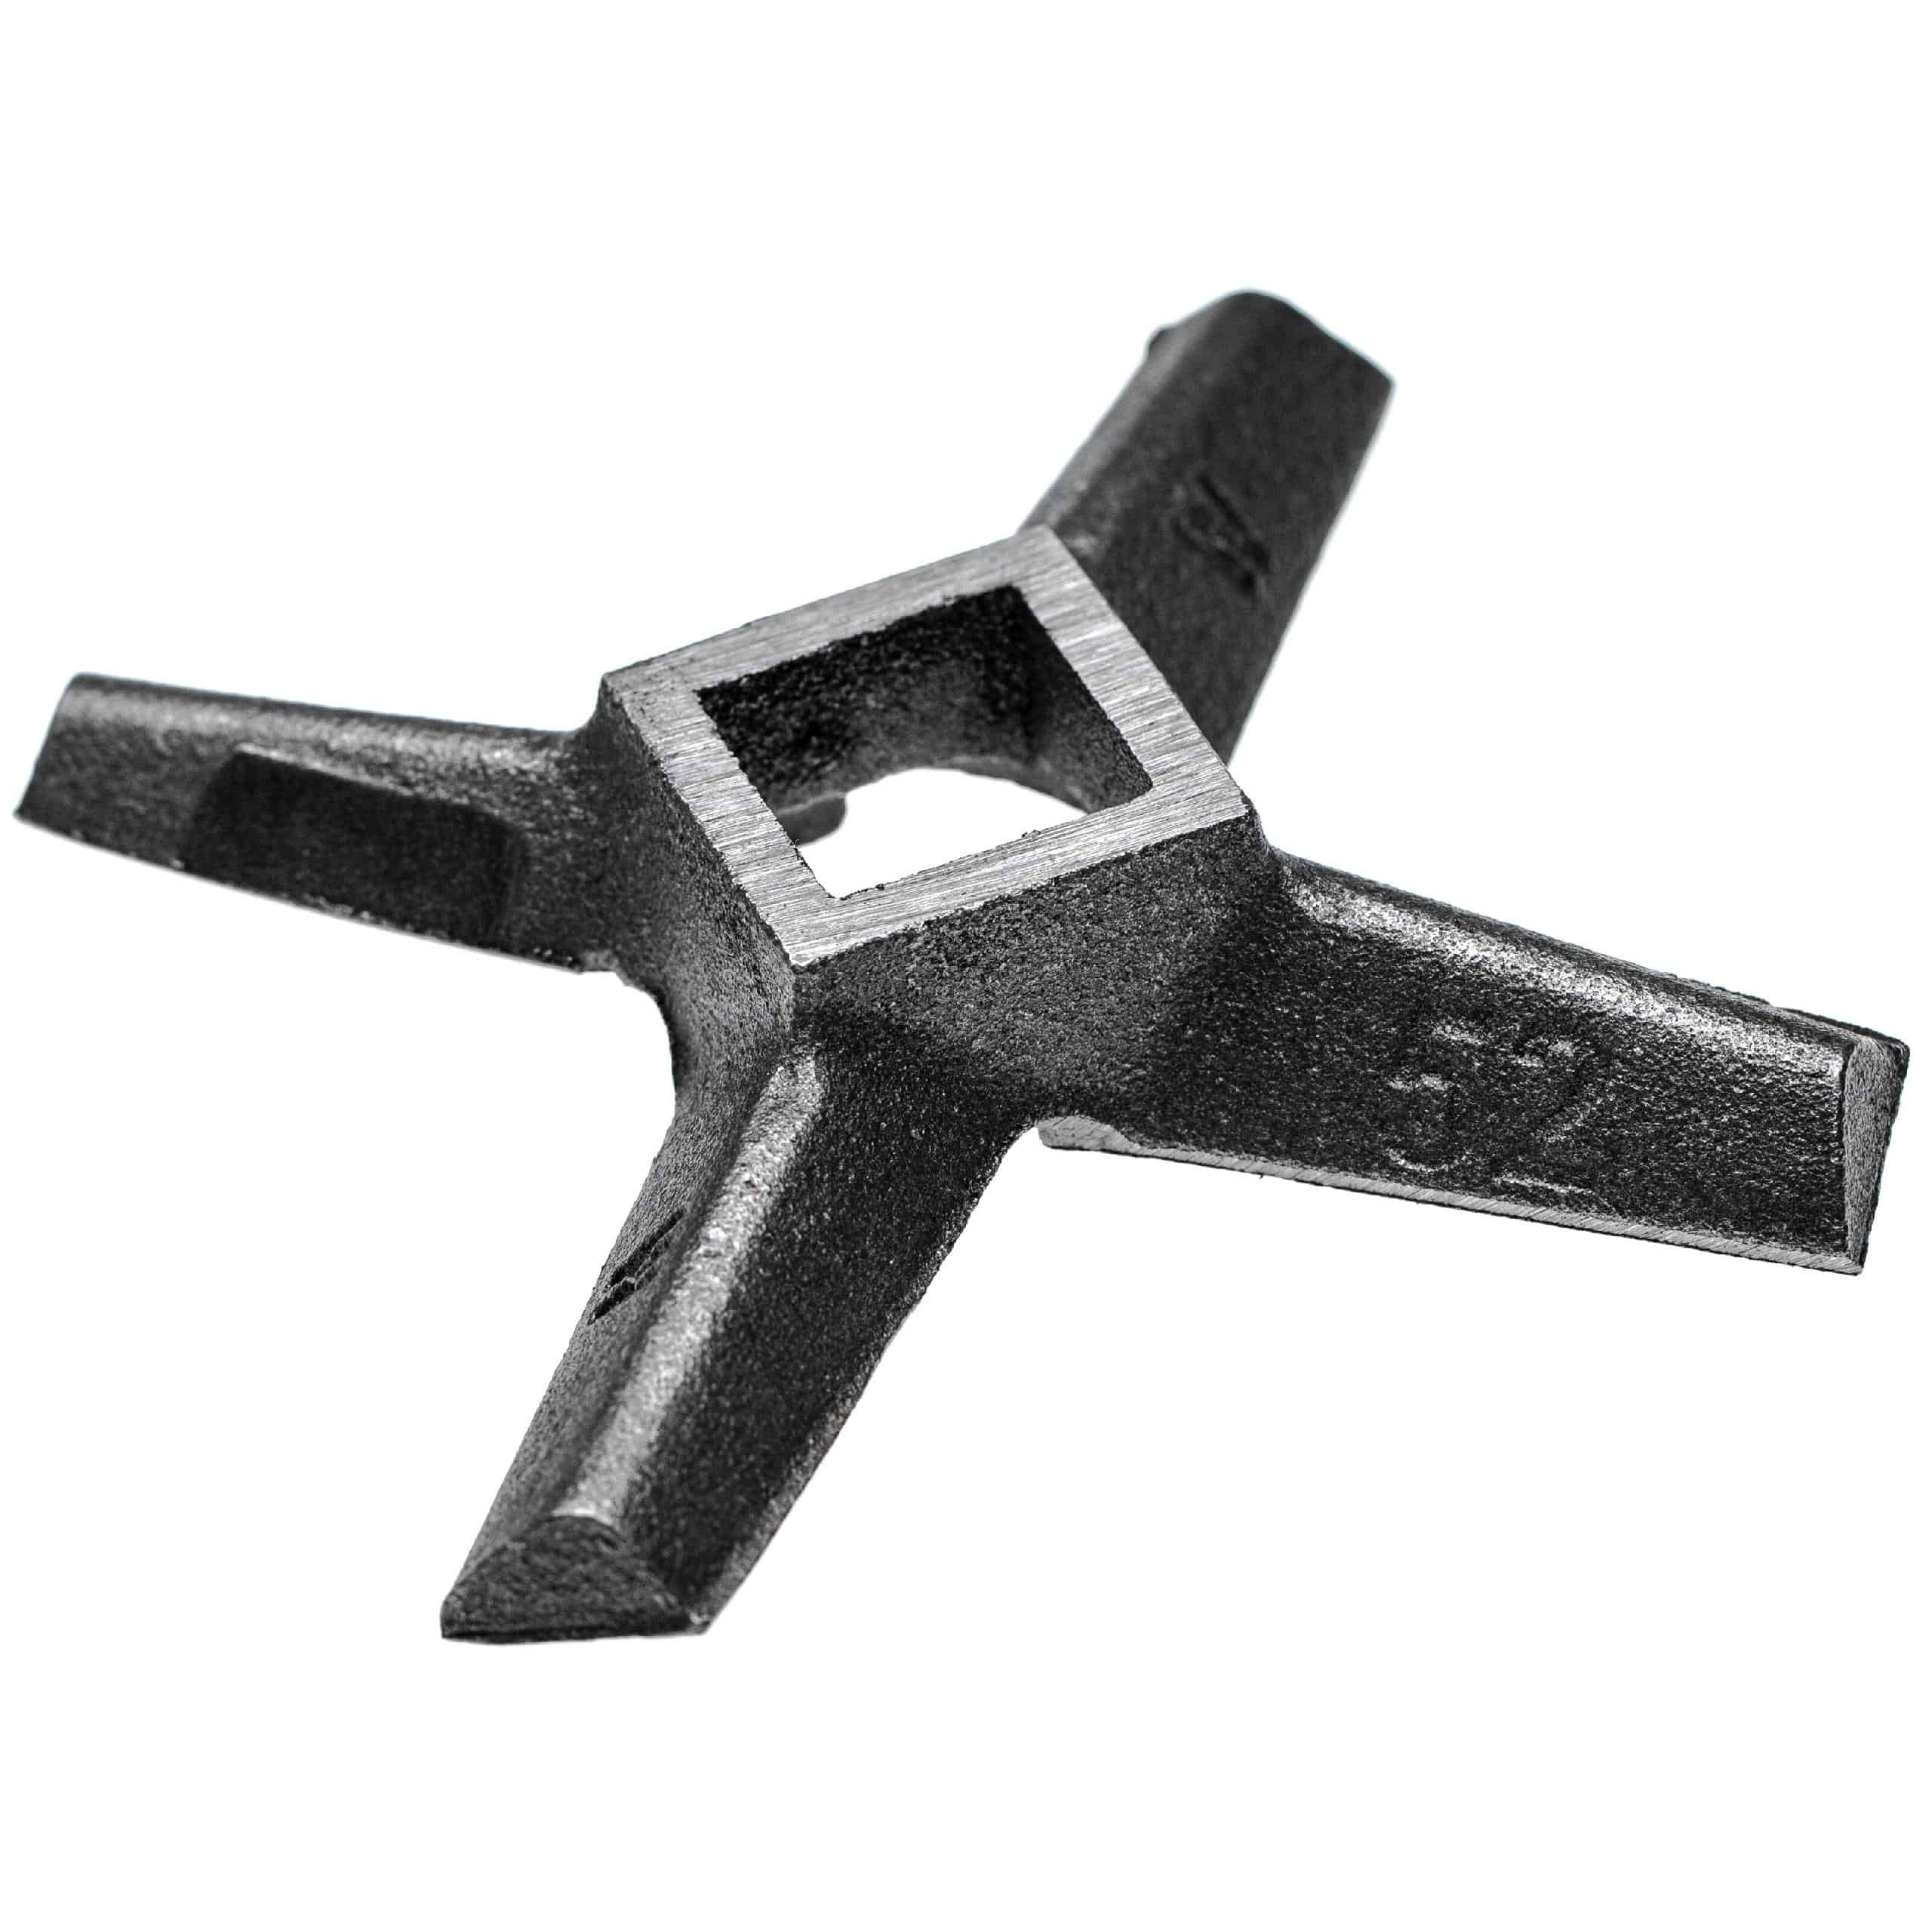 Kreuzmesser Gr. 52, 23,3 x 23,3 mm , zB. für ADE, Caso Fleischwolf, Gusseisen, 289 g